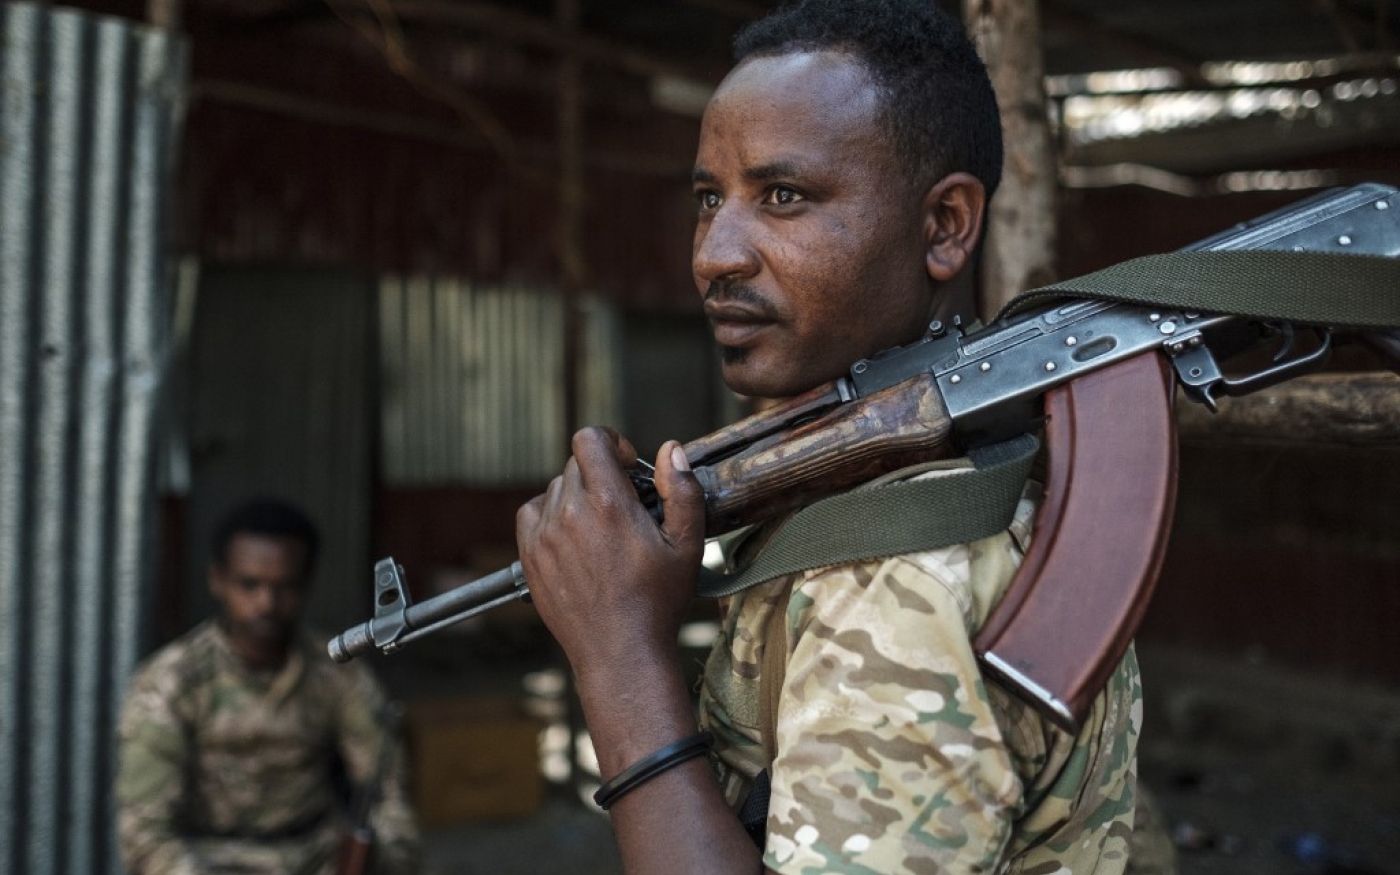 Un membre des forces spéciales de l’ethnie Amhara, le 25 novembre 2020 (AFP)